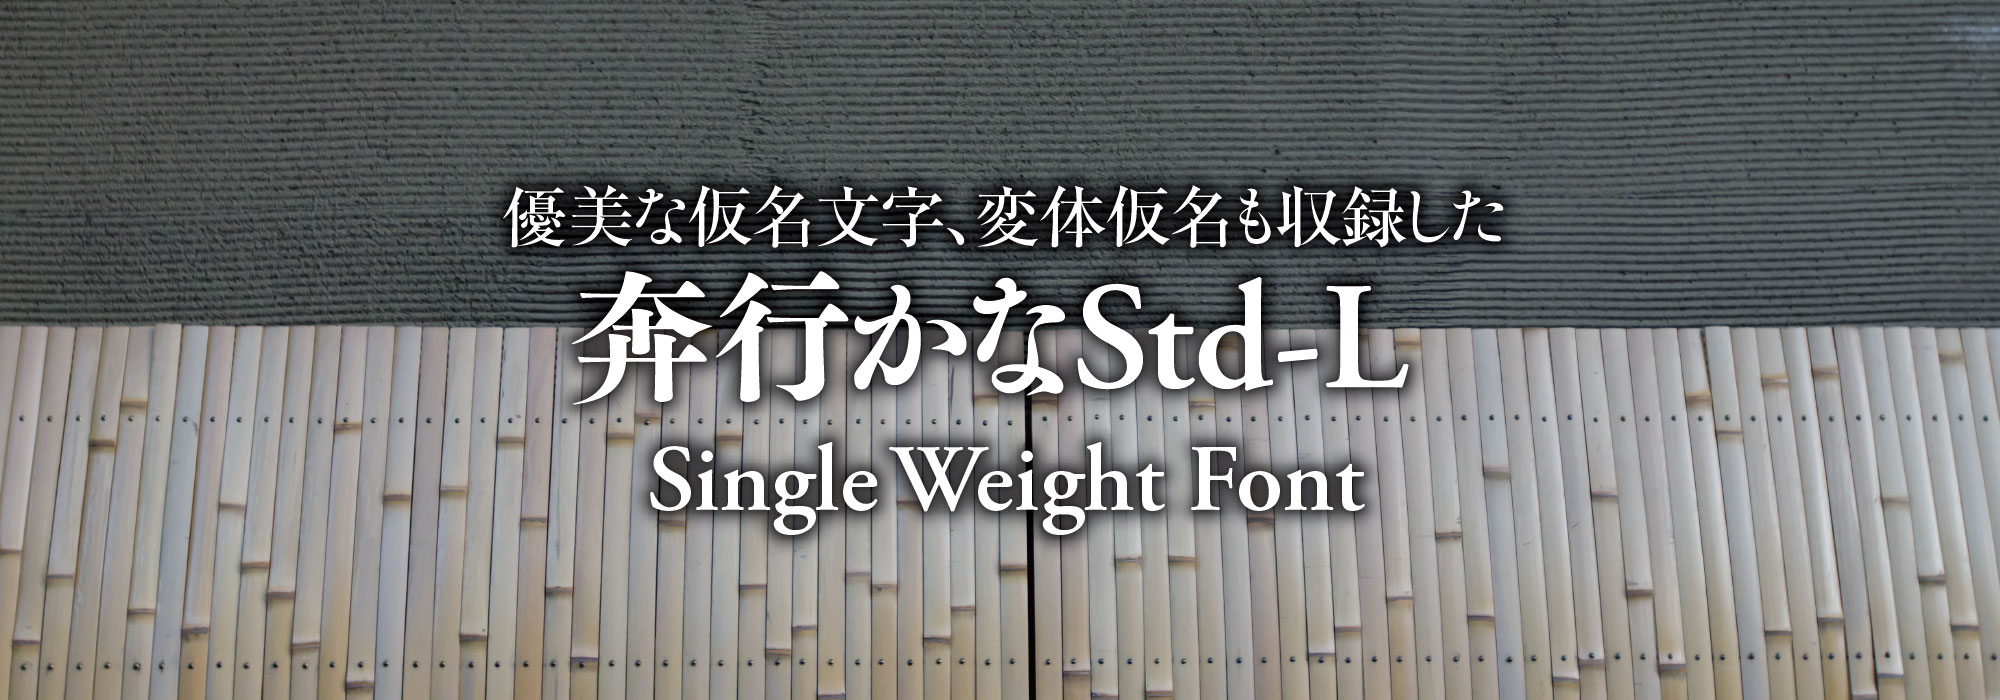 優美な仮名文字、変体仮名も収録した 奔行かなStd-L Single Weight Font